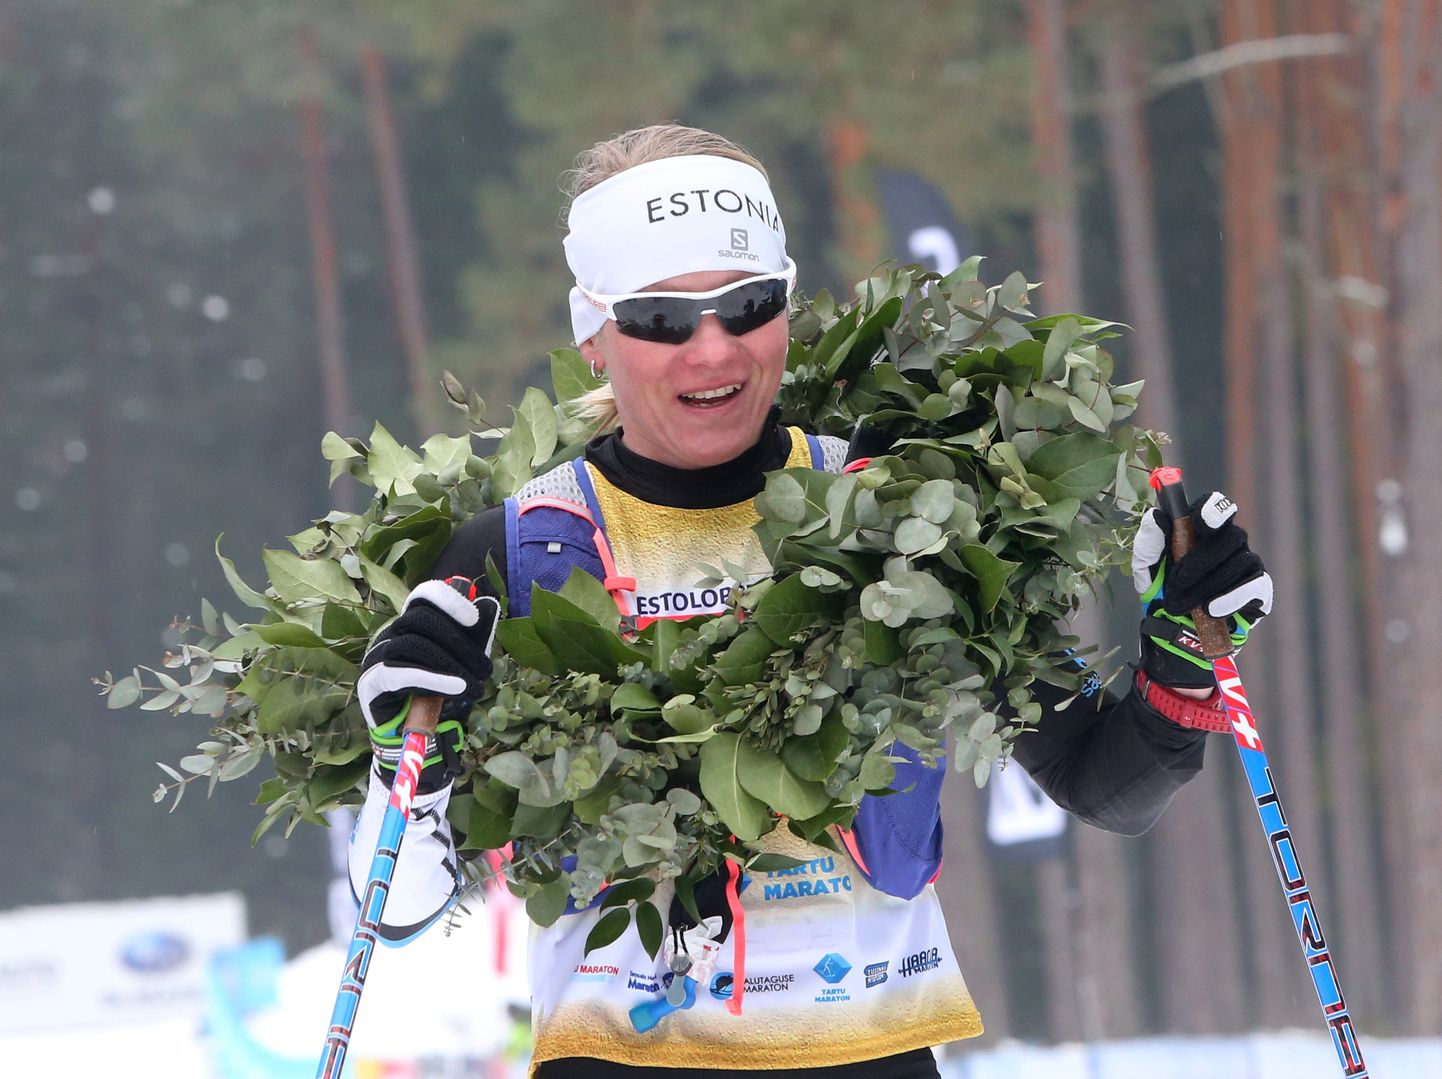 На финише 63-километрового лыжного марафона Татьяну Маннима как самую быструю среди женщин увенчали дубовым венком.